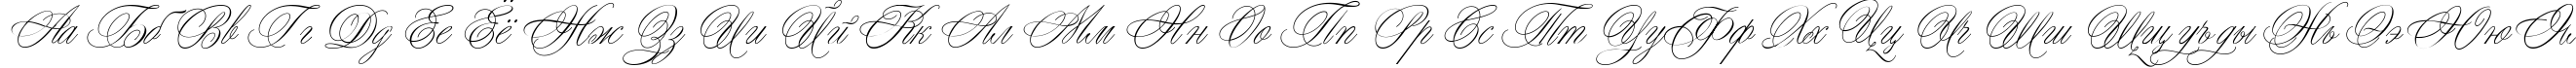 Пример написания русского алфавита шрифтом Margarita script